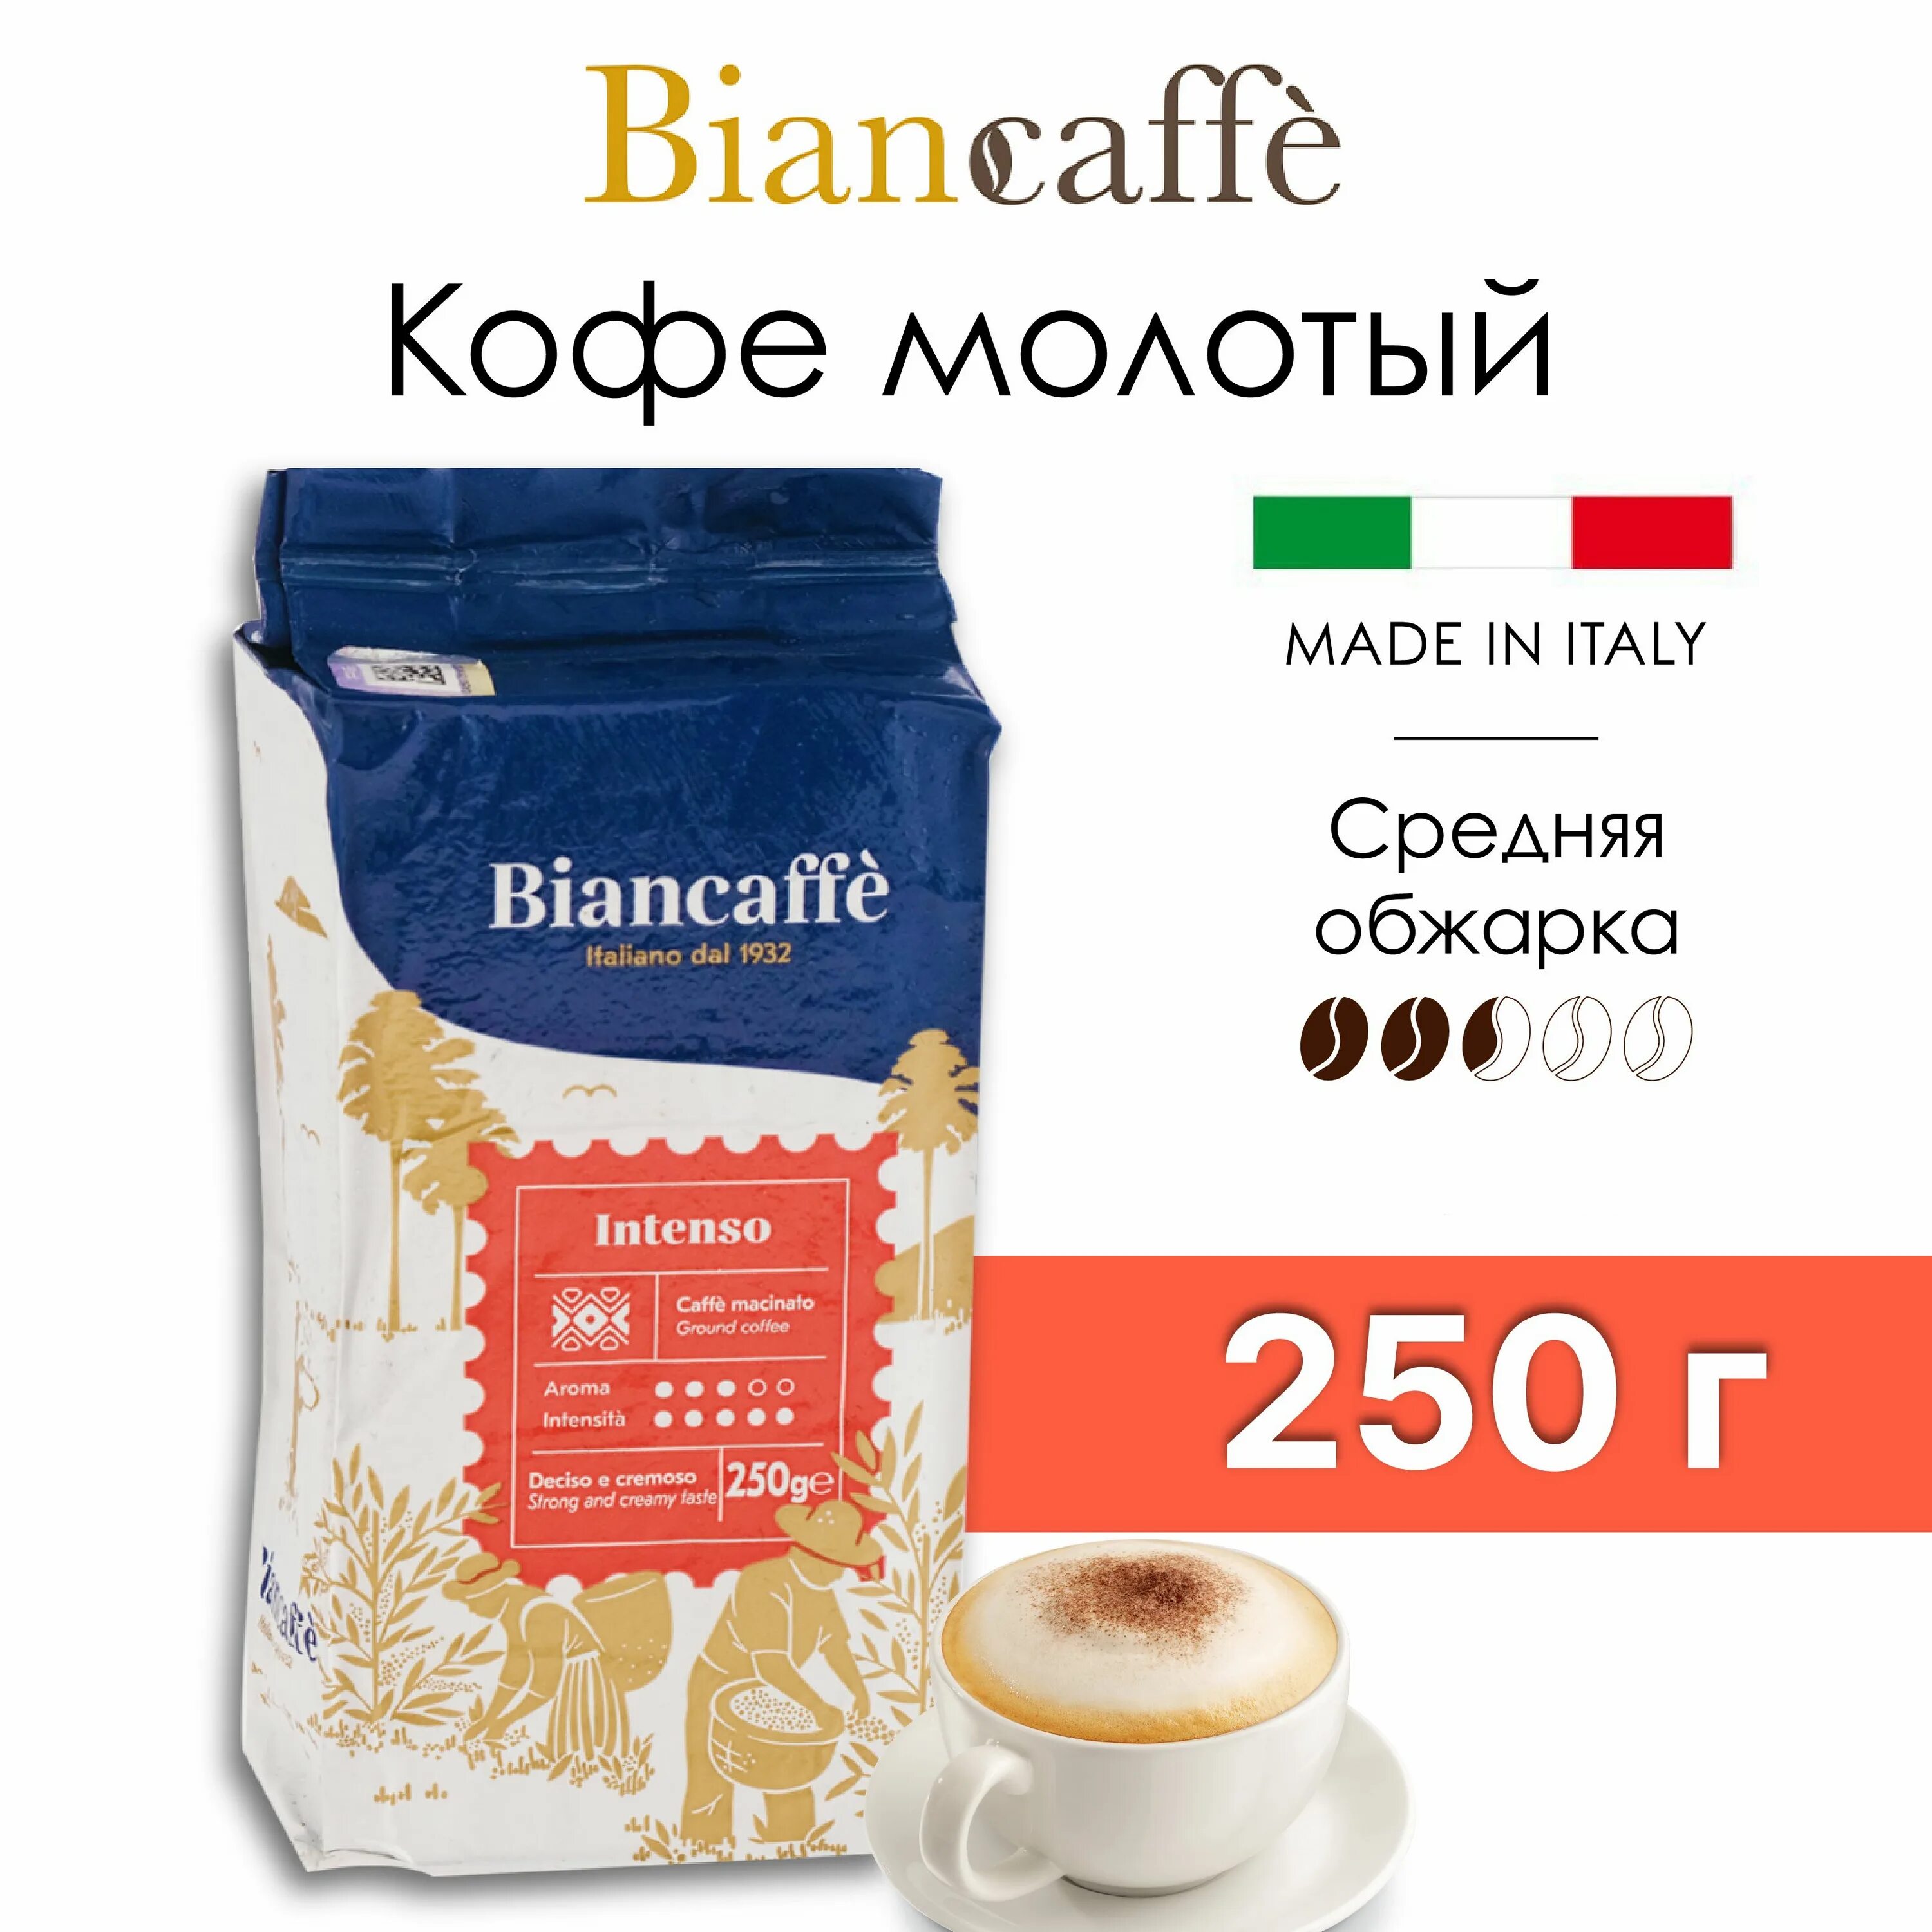 Кофе молотый intenso. Biancaffe кофе. Biancaffe 500. Biancaffe.